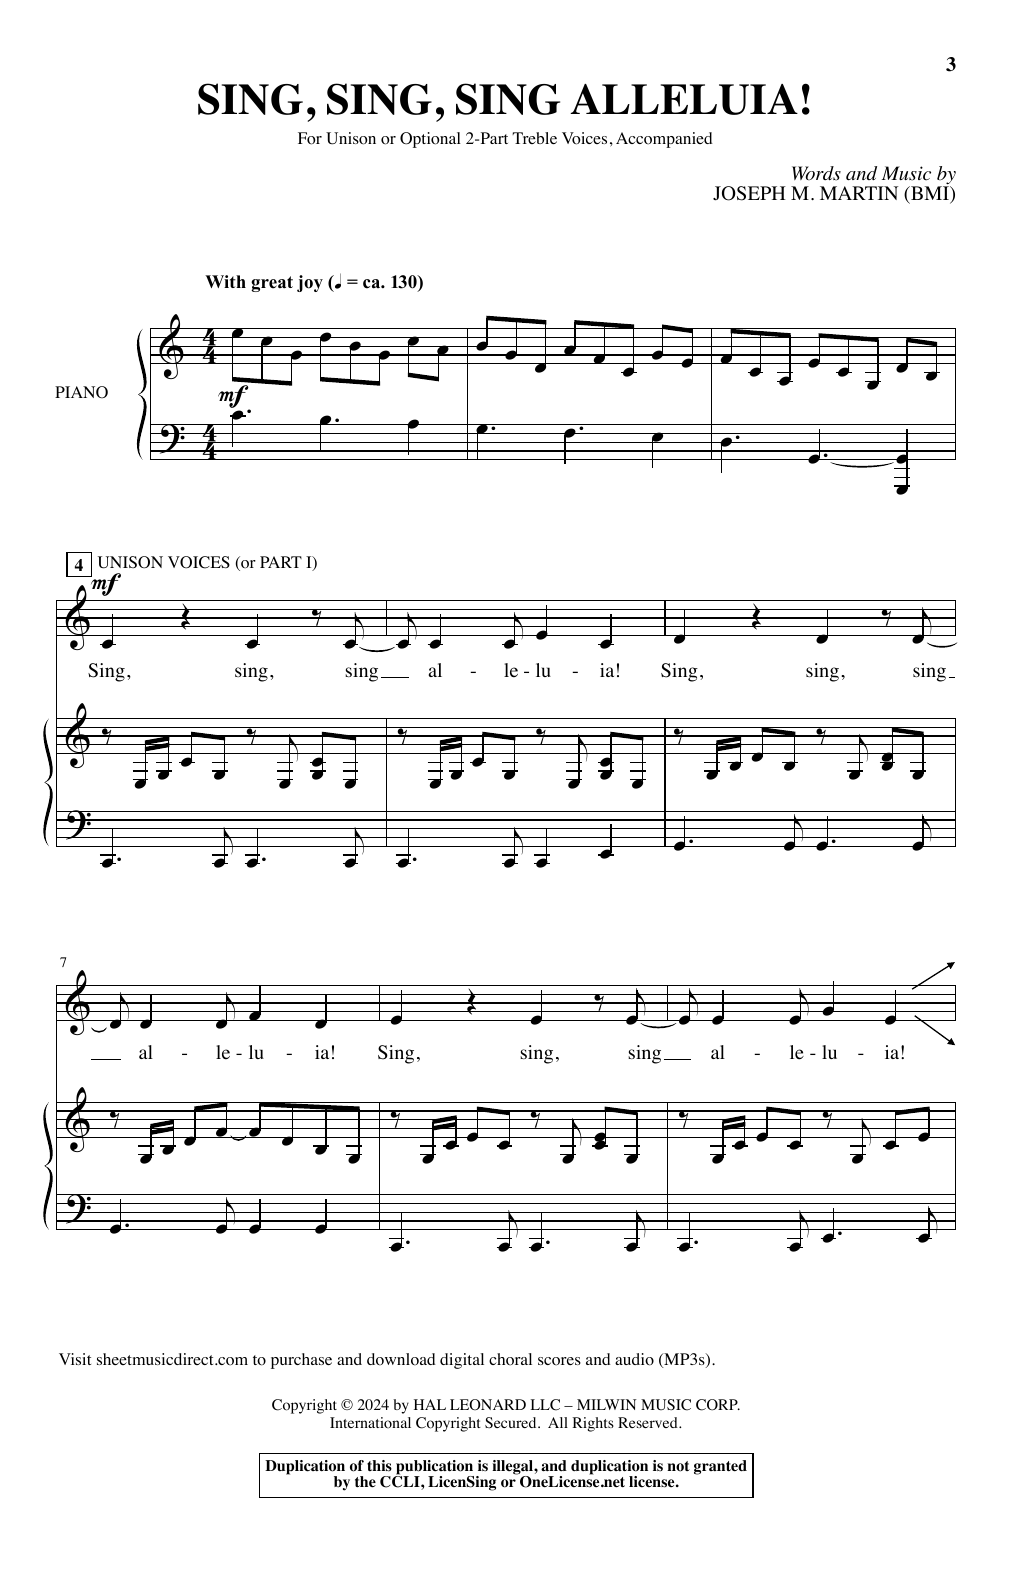 Joseph M. Martin Sing, Sing, Sing Alleluia! Sheet Music Notes & Chords for Choir - Download or Print PDF